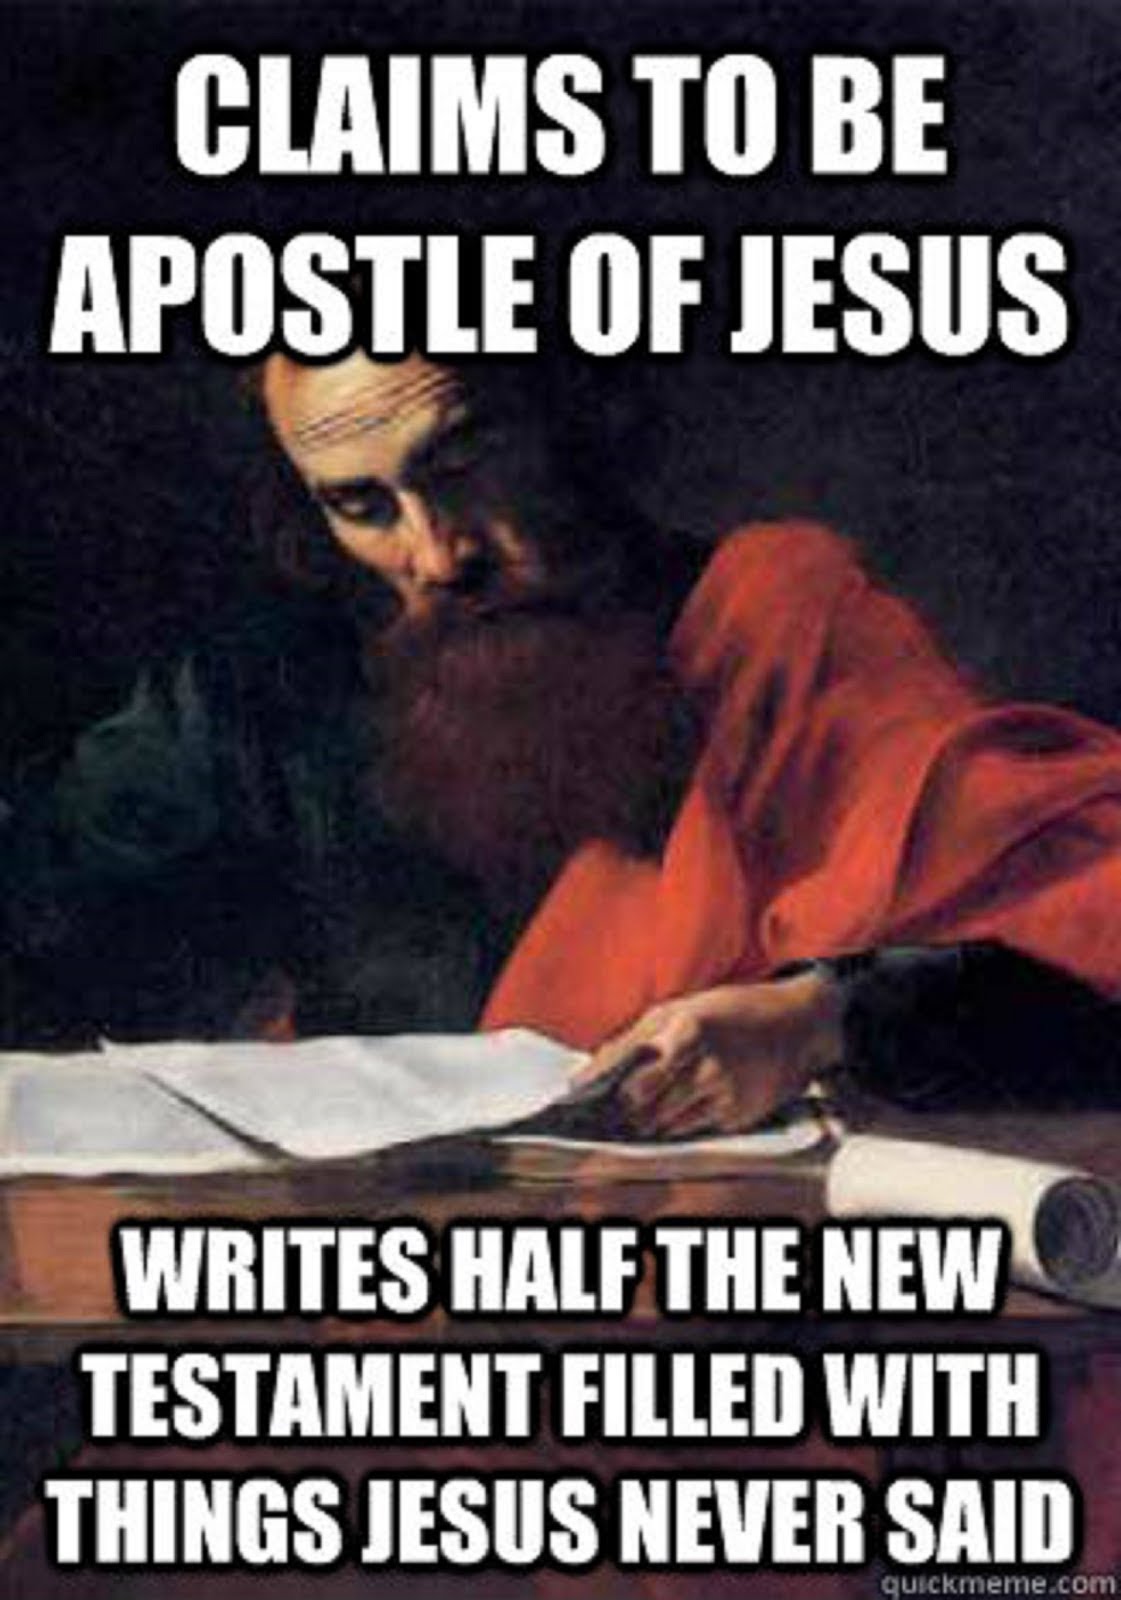 THE FALSE APOSTLE PAUL